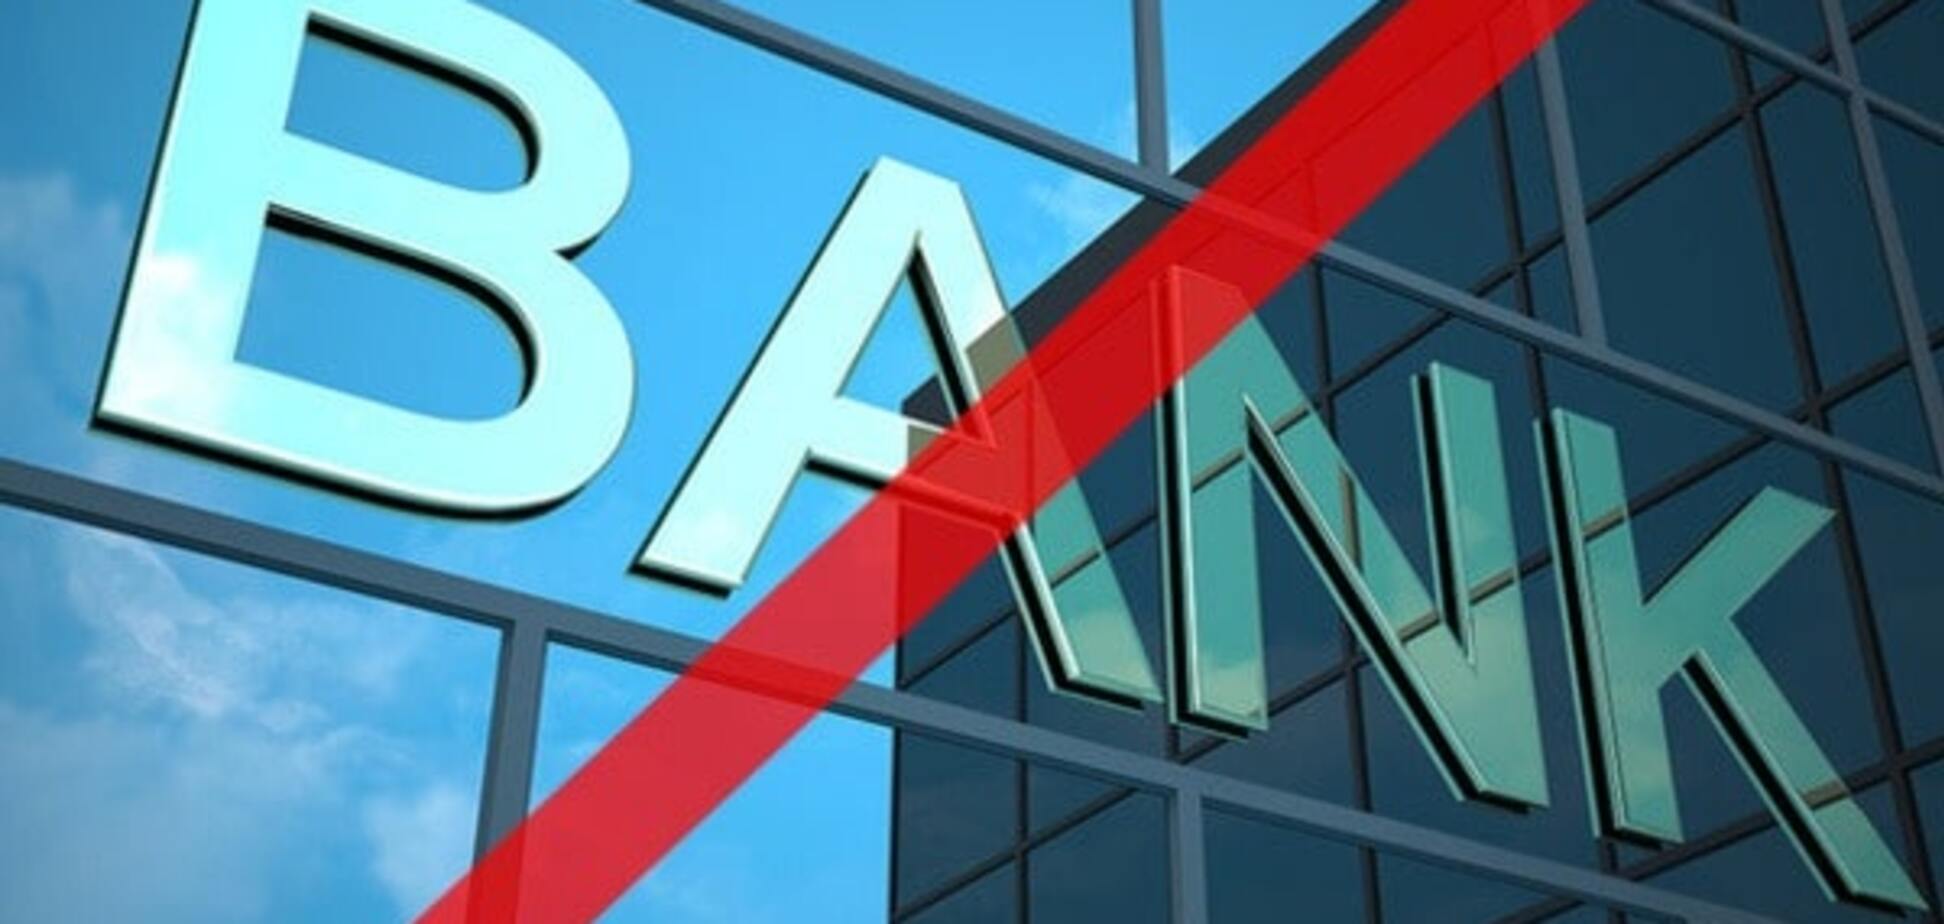 Вкладчикам лопнувшего 'Укринбанка' вернут депозиты через три банка